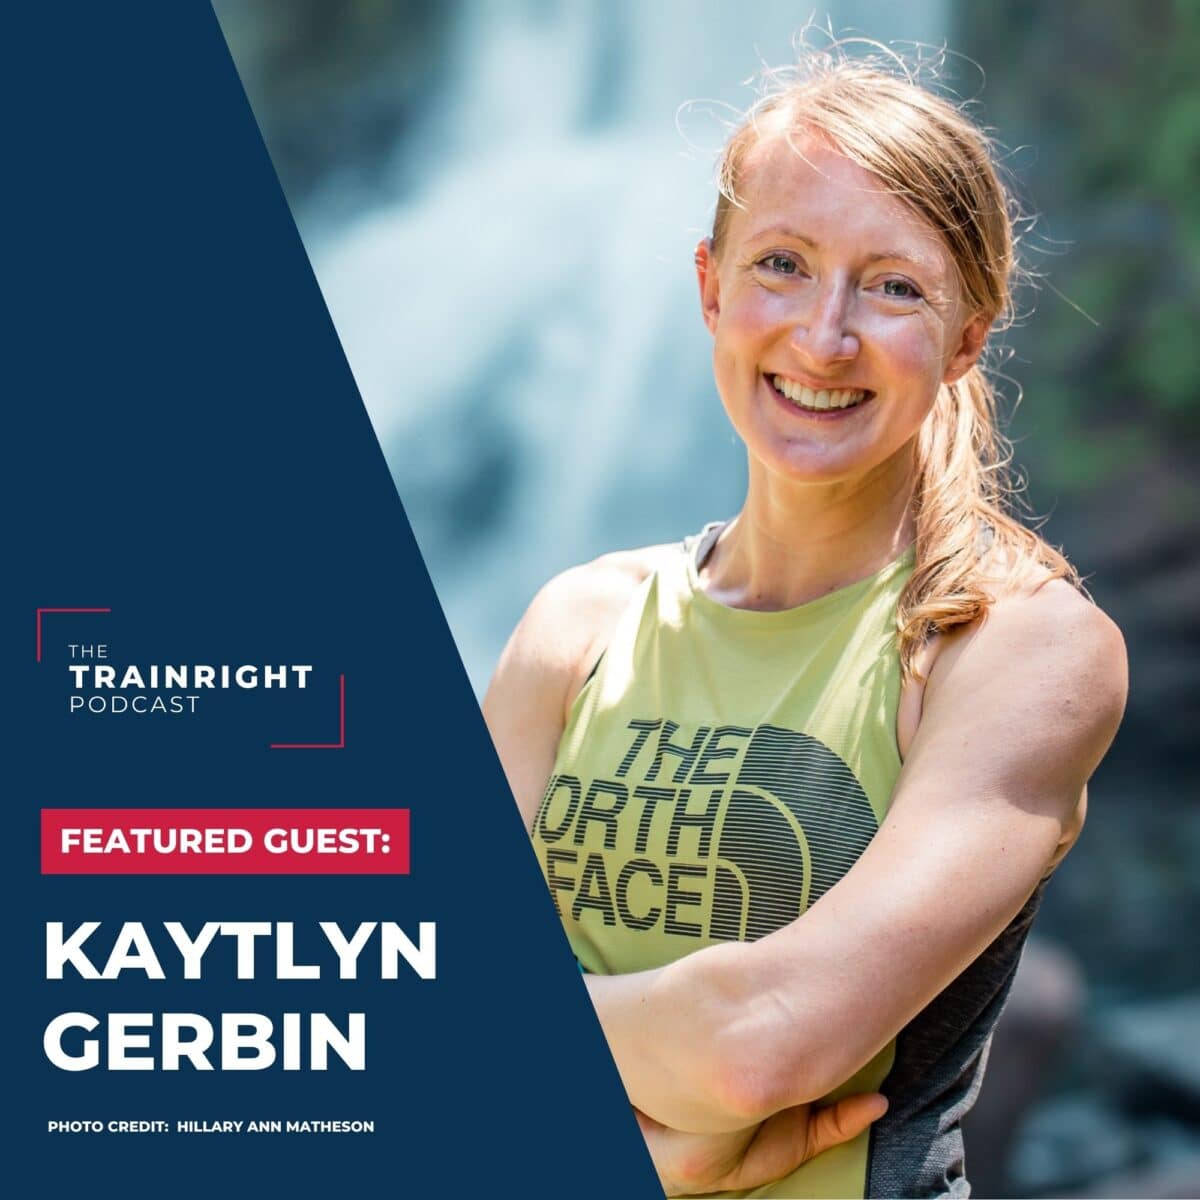 Kaytlyn Gerbin professional runner